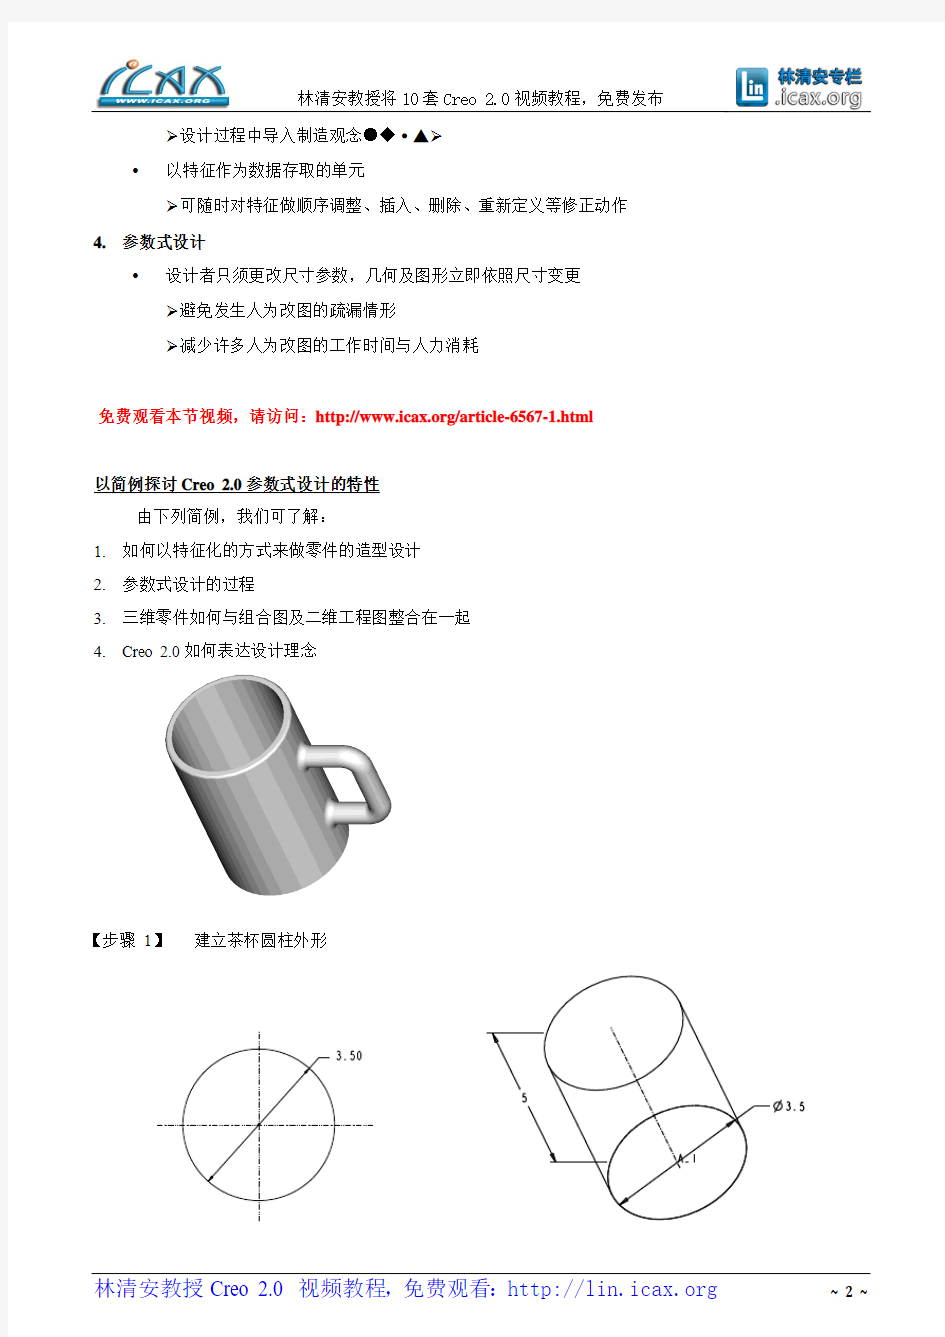 林清安教授ProE Creo 2.0零件设计视频教程--图文教程(第一节)